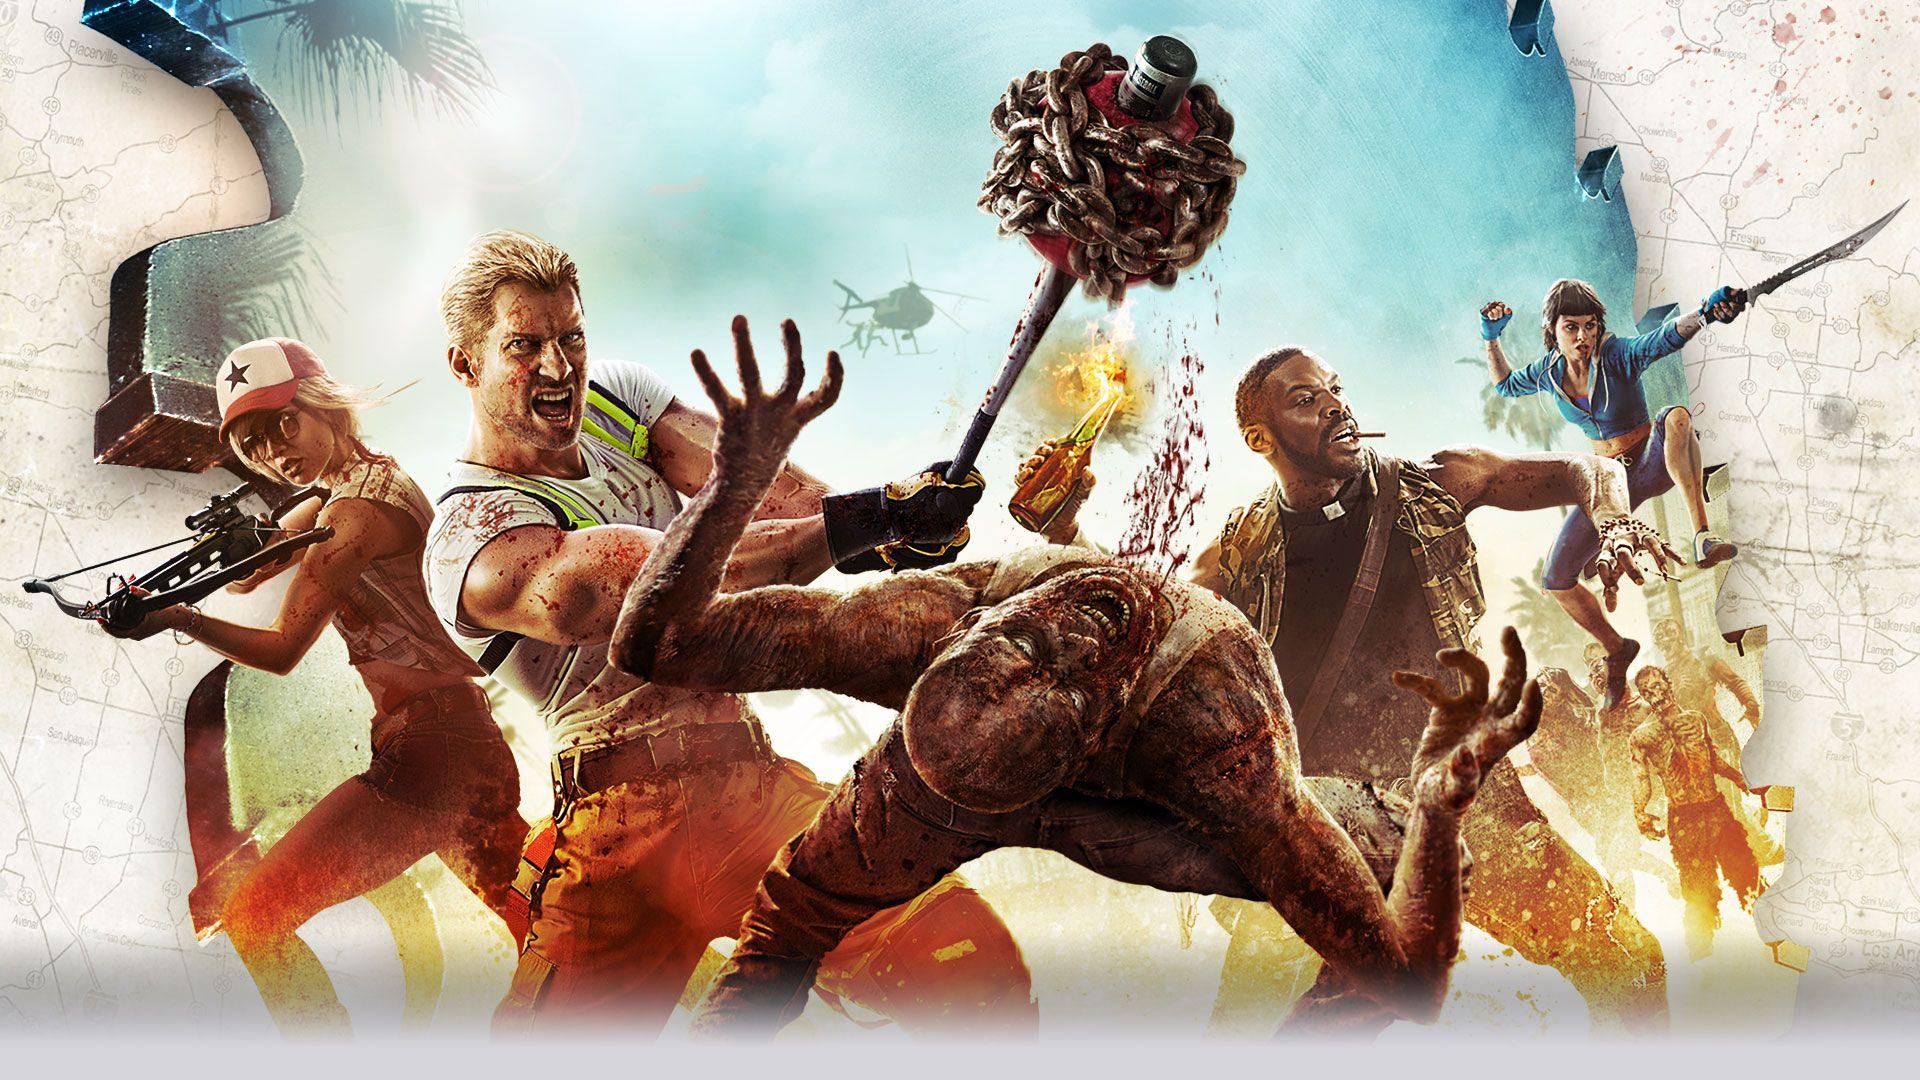 Dead Island 2 HD wallpaper free download